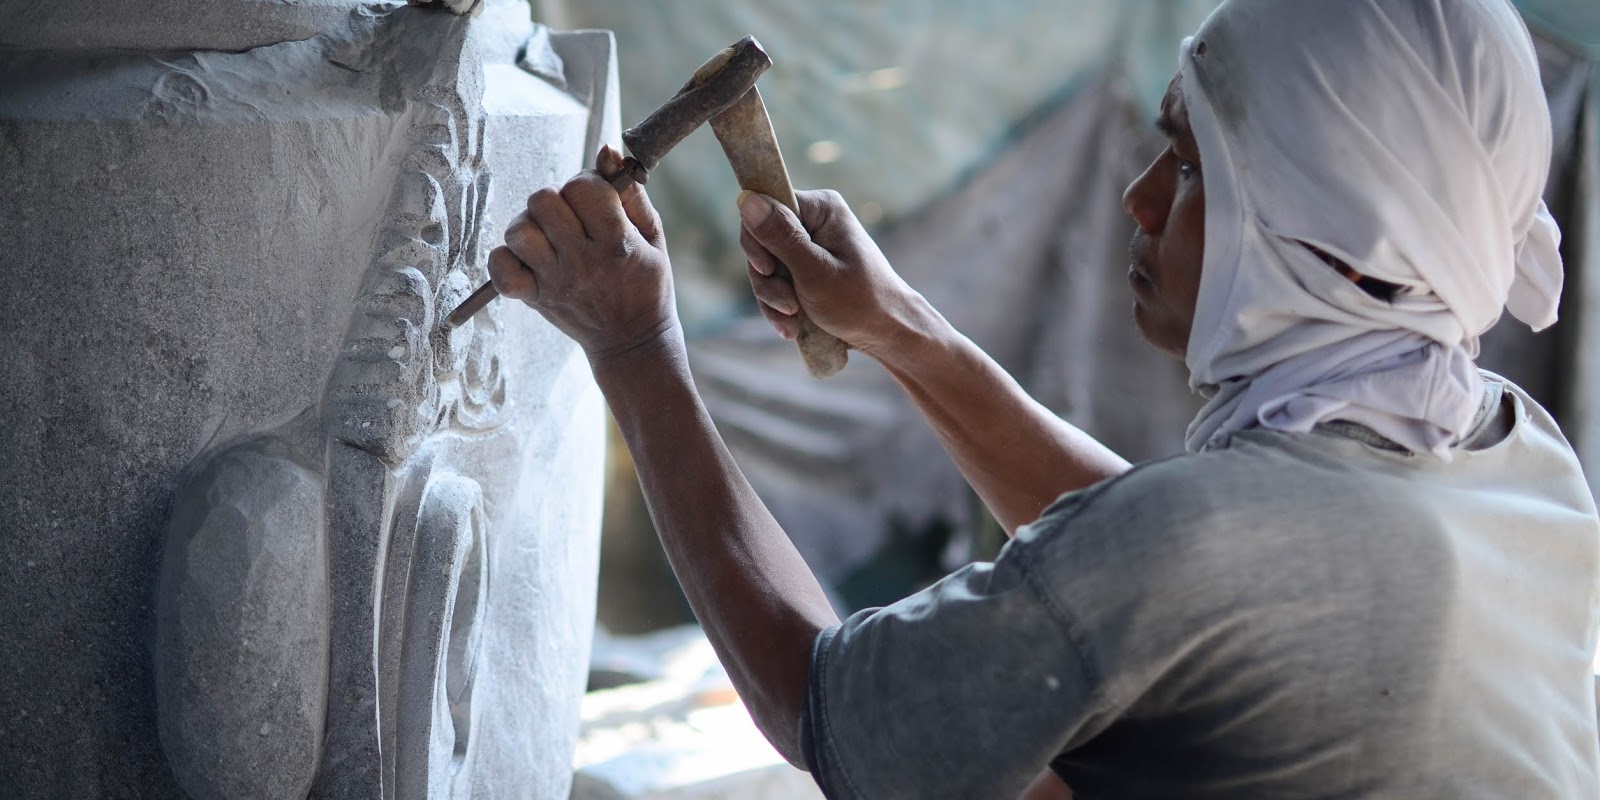 Proses pembuatan patung dengan mengurangi bahan caranya dipahat atau dipotong disebut